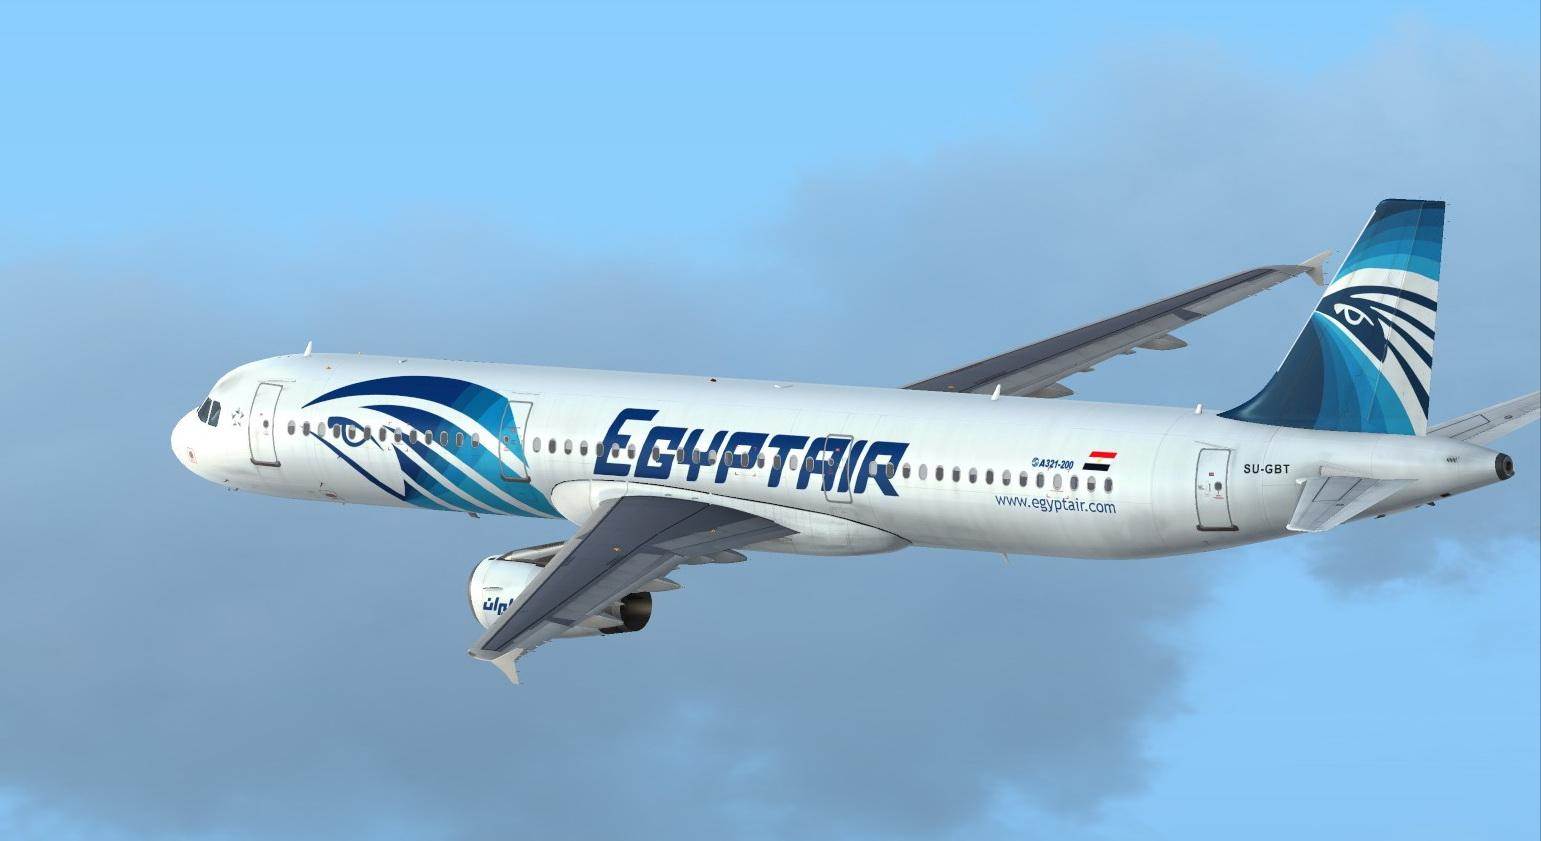 جسم طائر بضوء أخضر اقترب من الطائرة المصرية قبل سقوطها